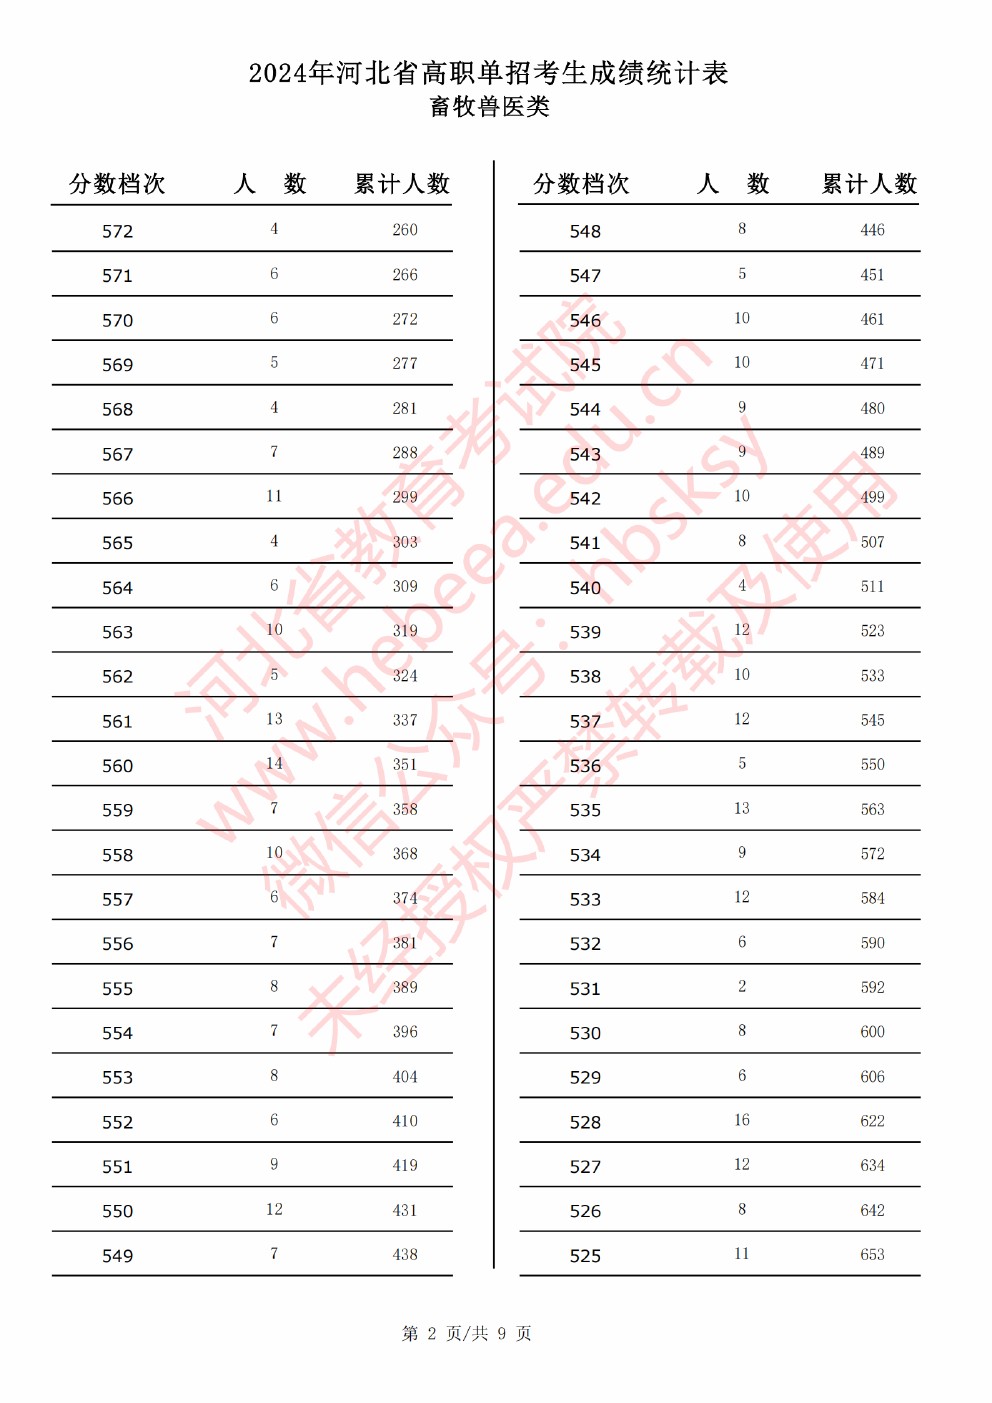 2024年河北省高职单招考试畜牧兽医类成绩统计表 